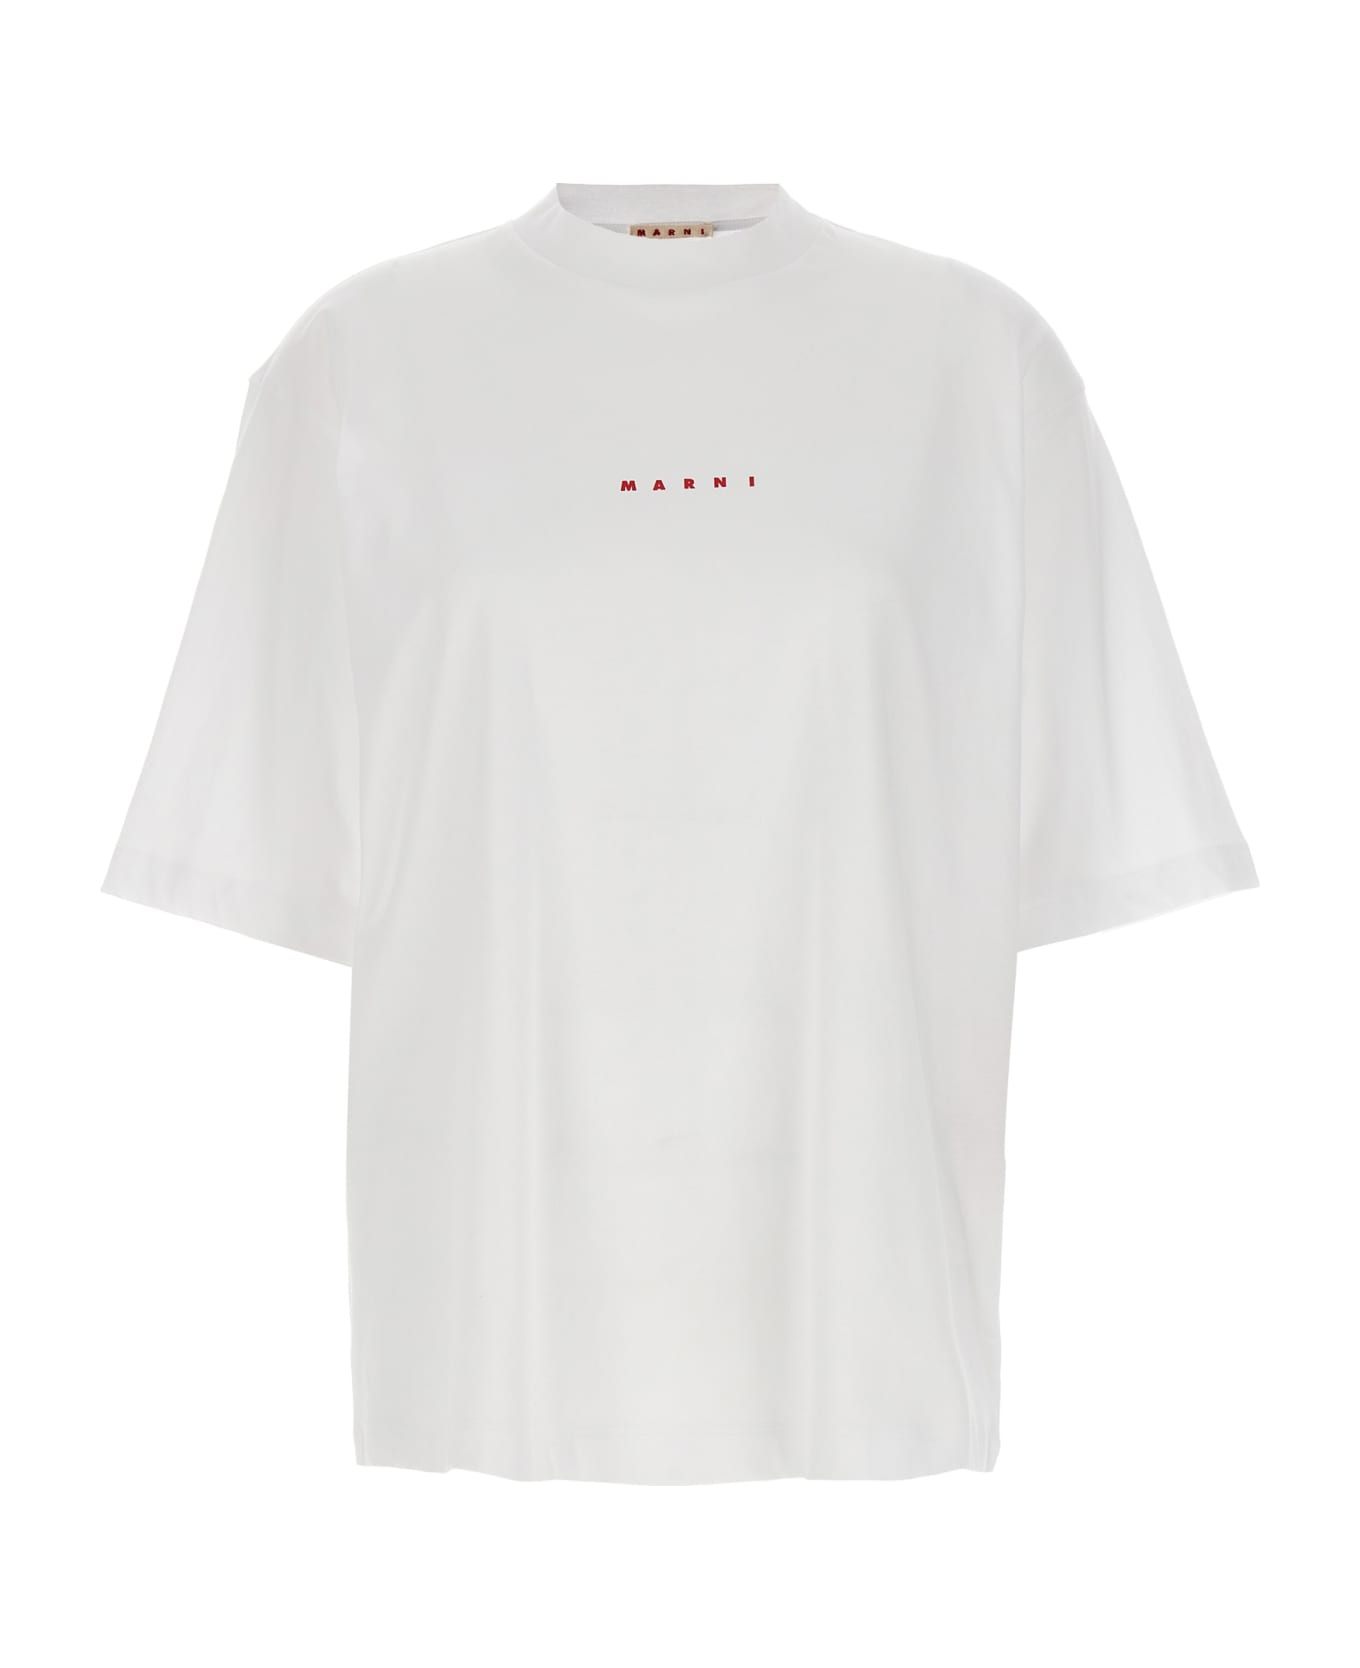 Marni Logo Print T-shirt - White